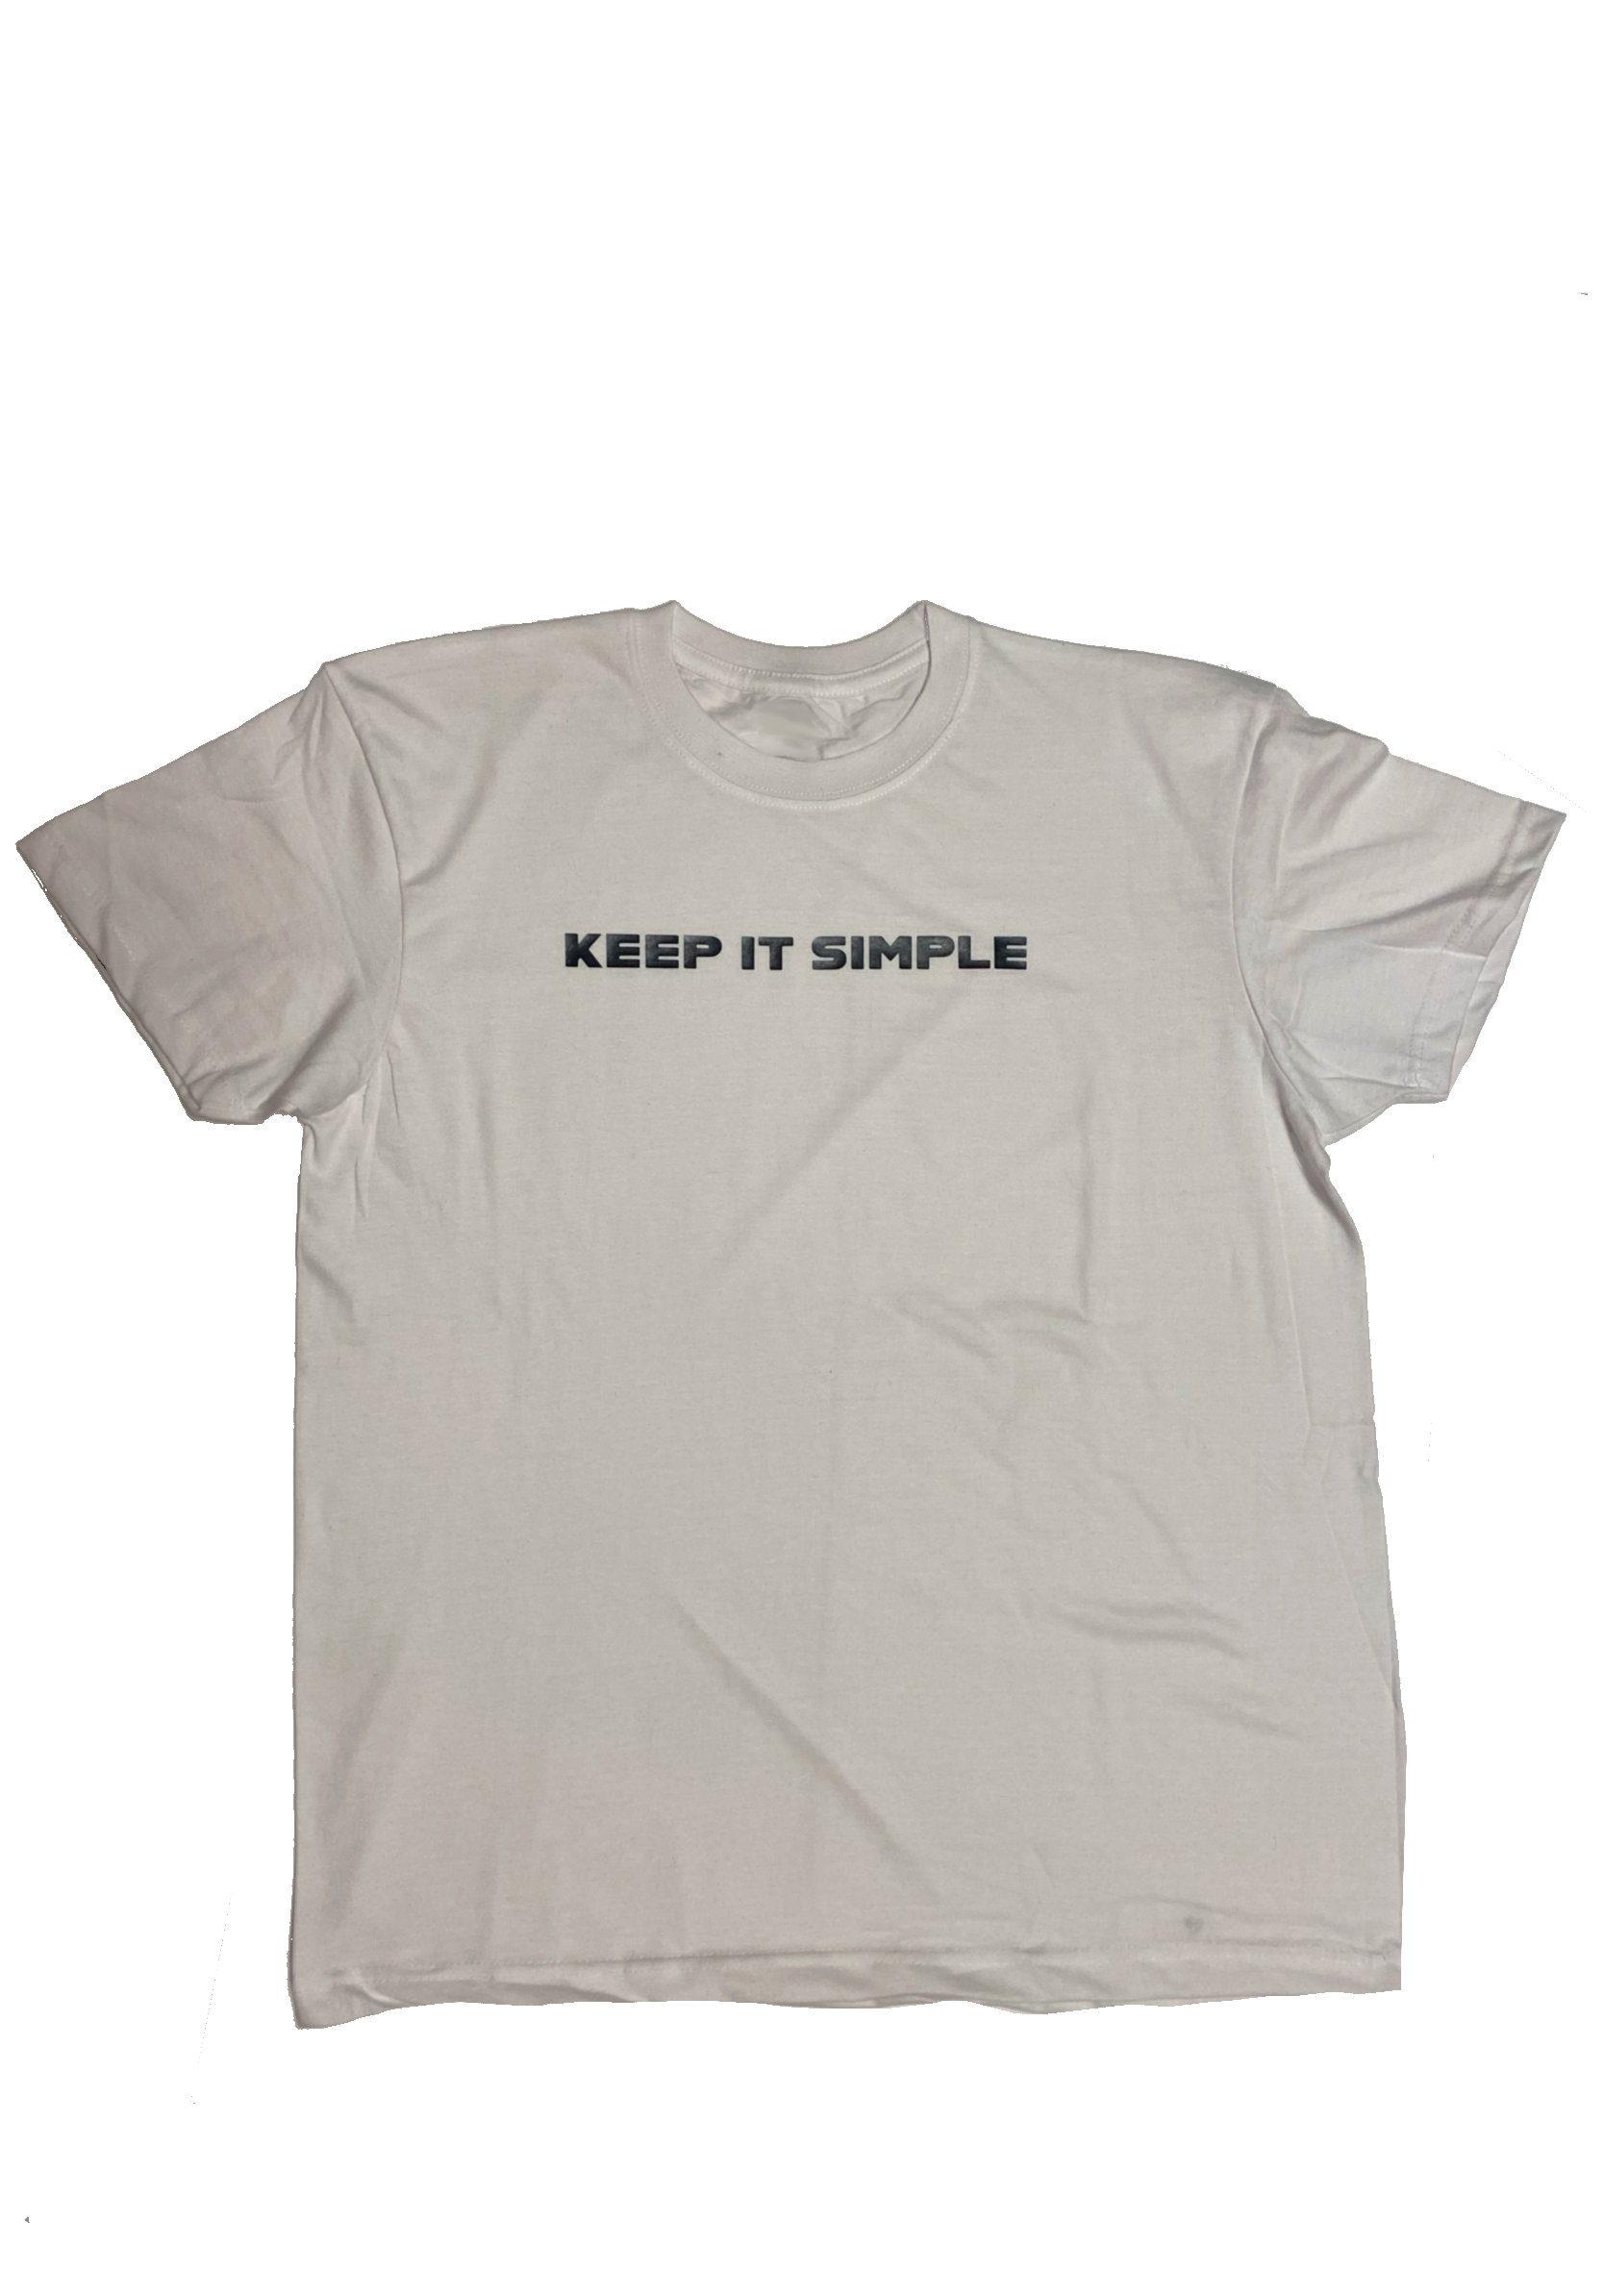 Keep it Simple Shirt – KulturaKreatives